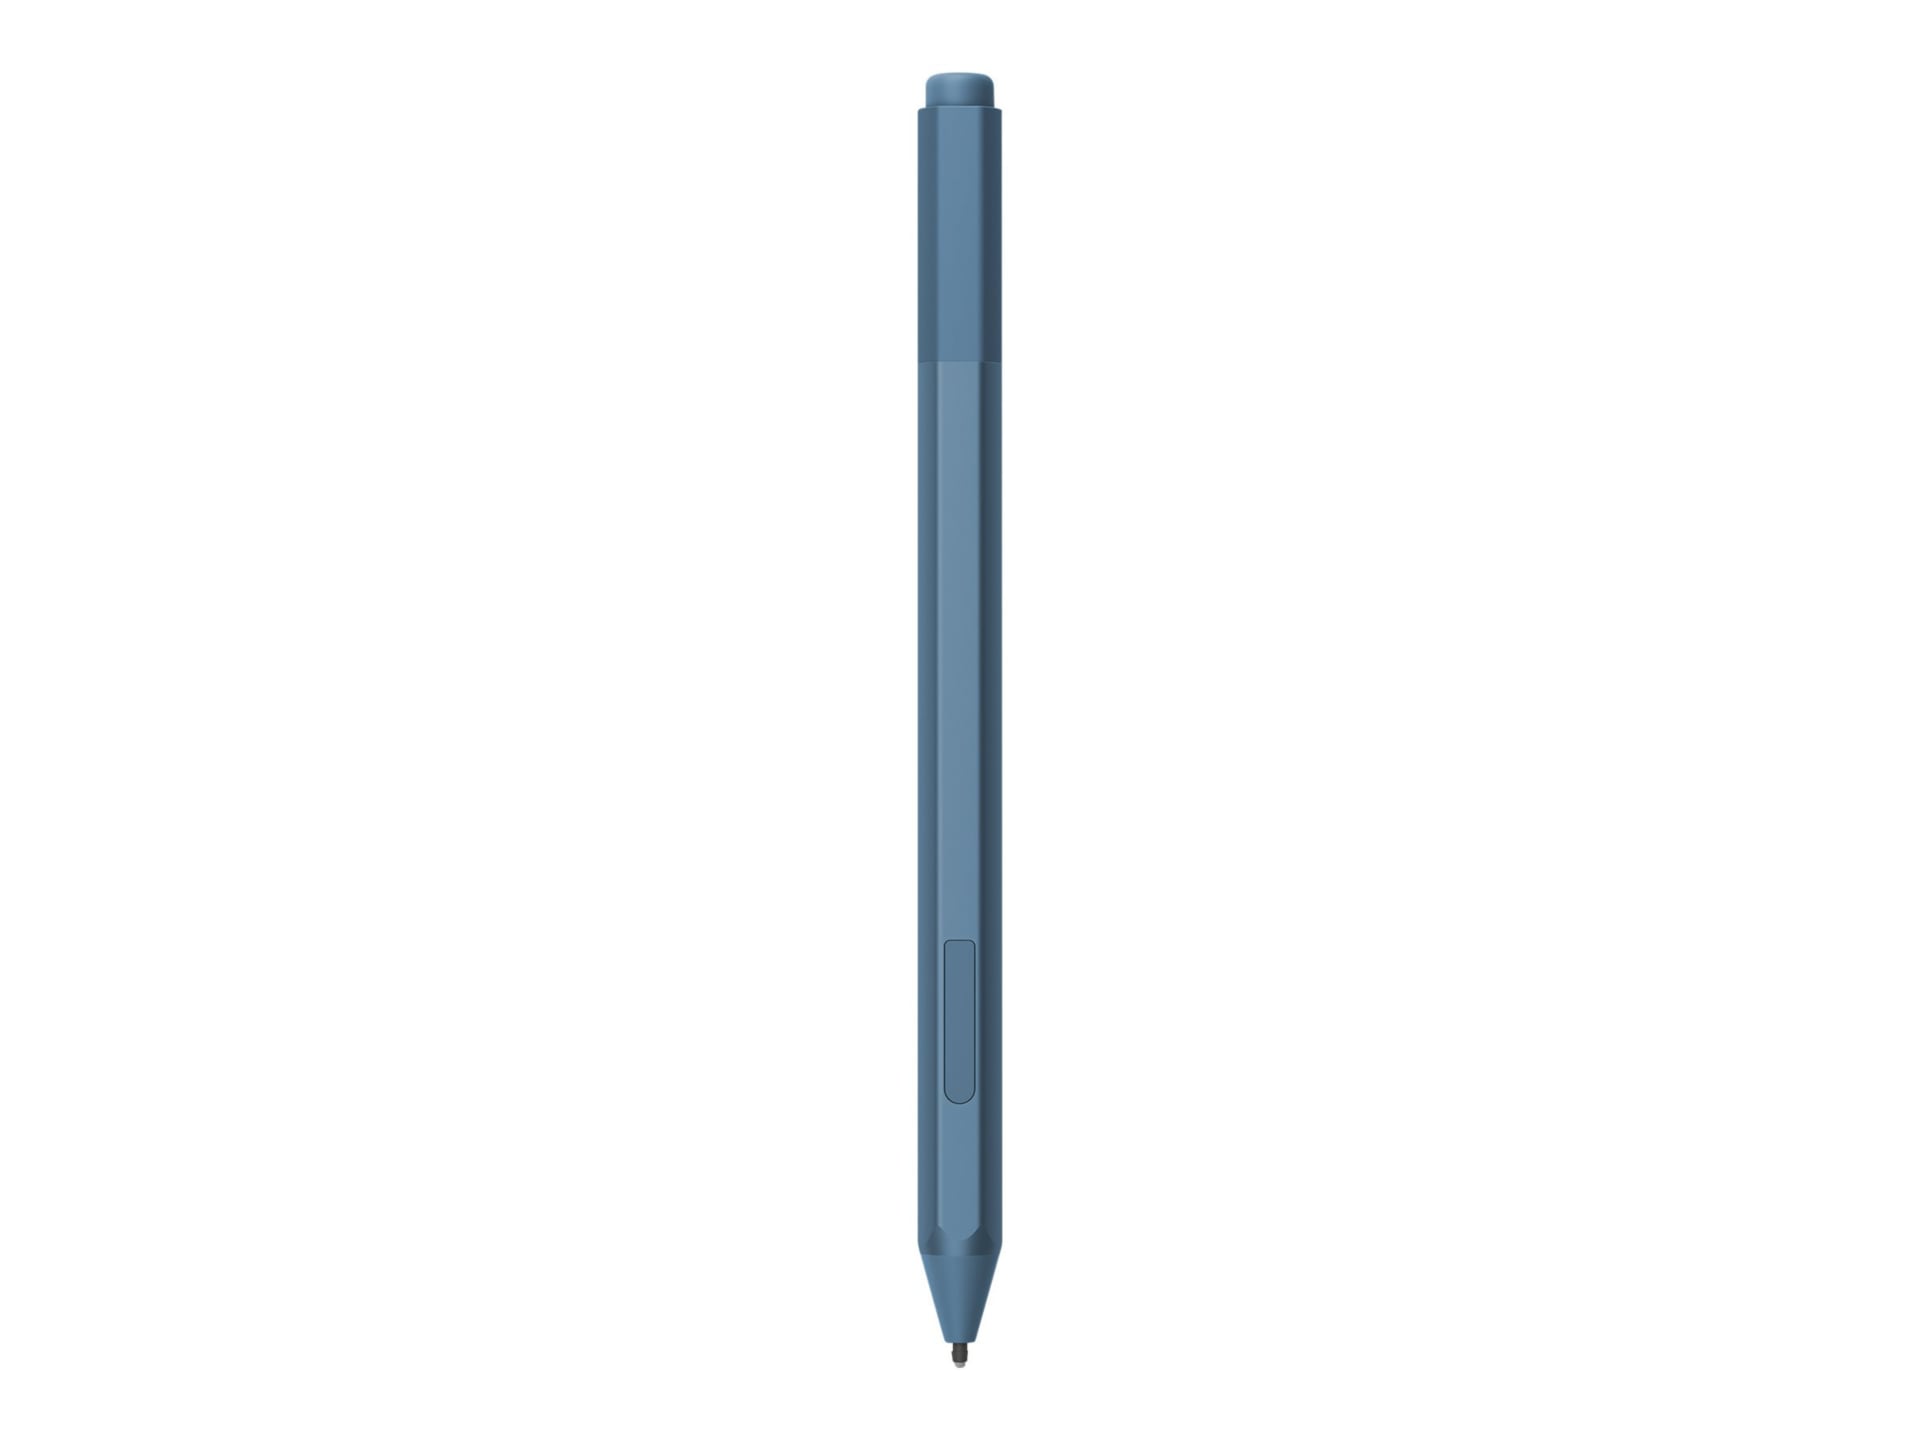 Surface Pen - Blue